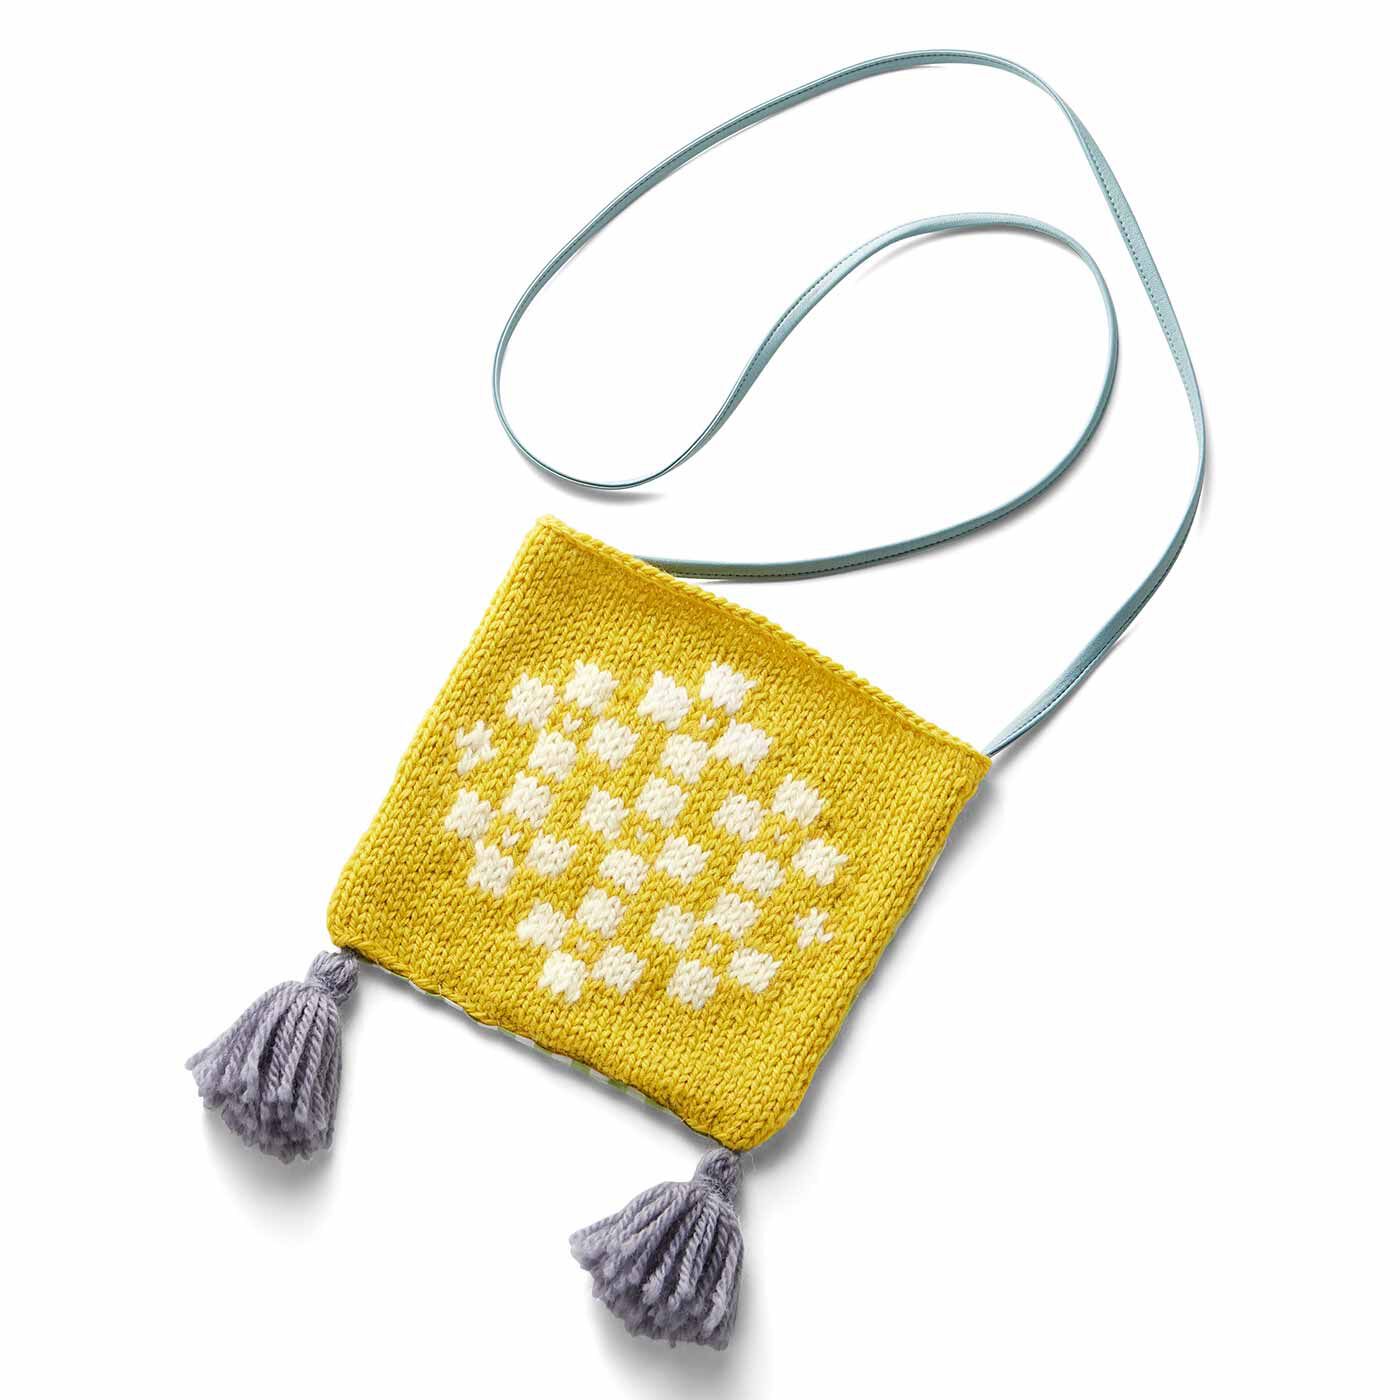 Couturier|自然からの贈りもの めくるめく北欧模様を楽しむ棒針編みサンプラーの会|2枚でミニバッグに。